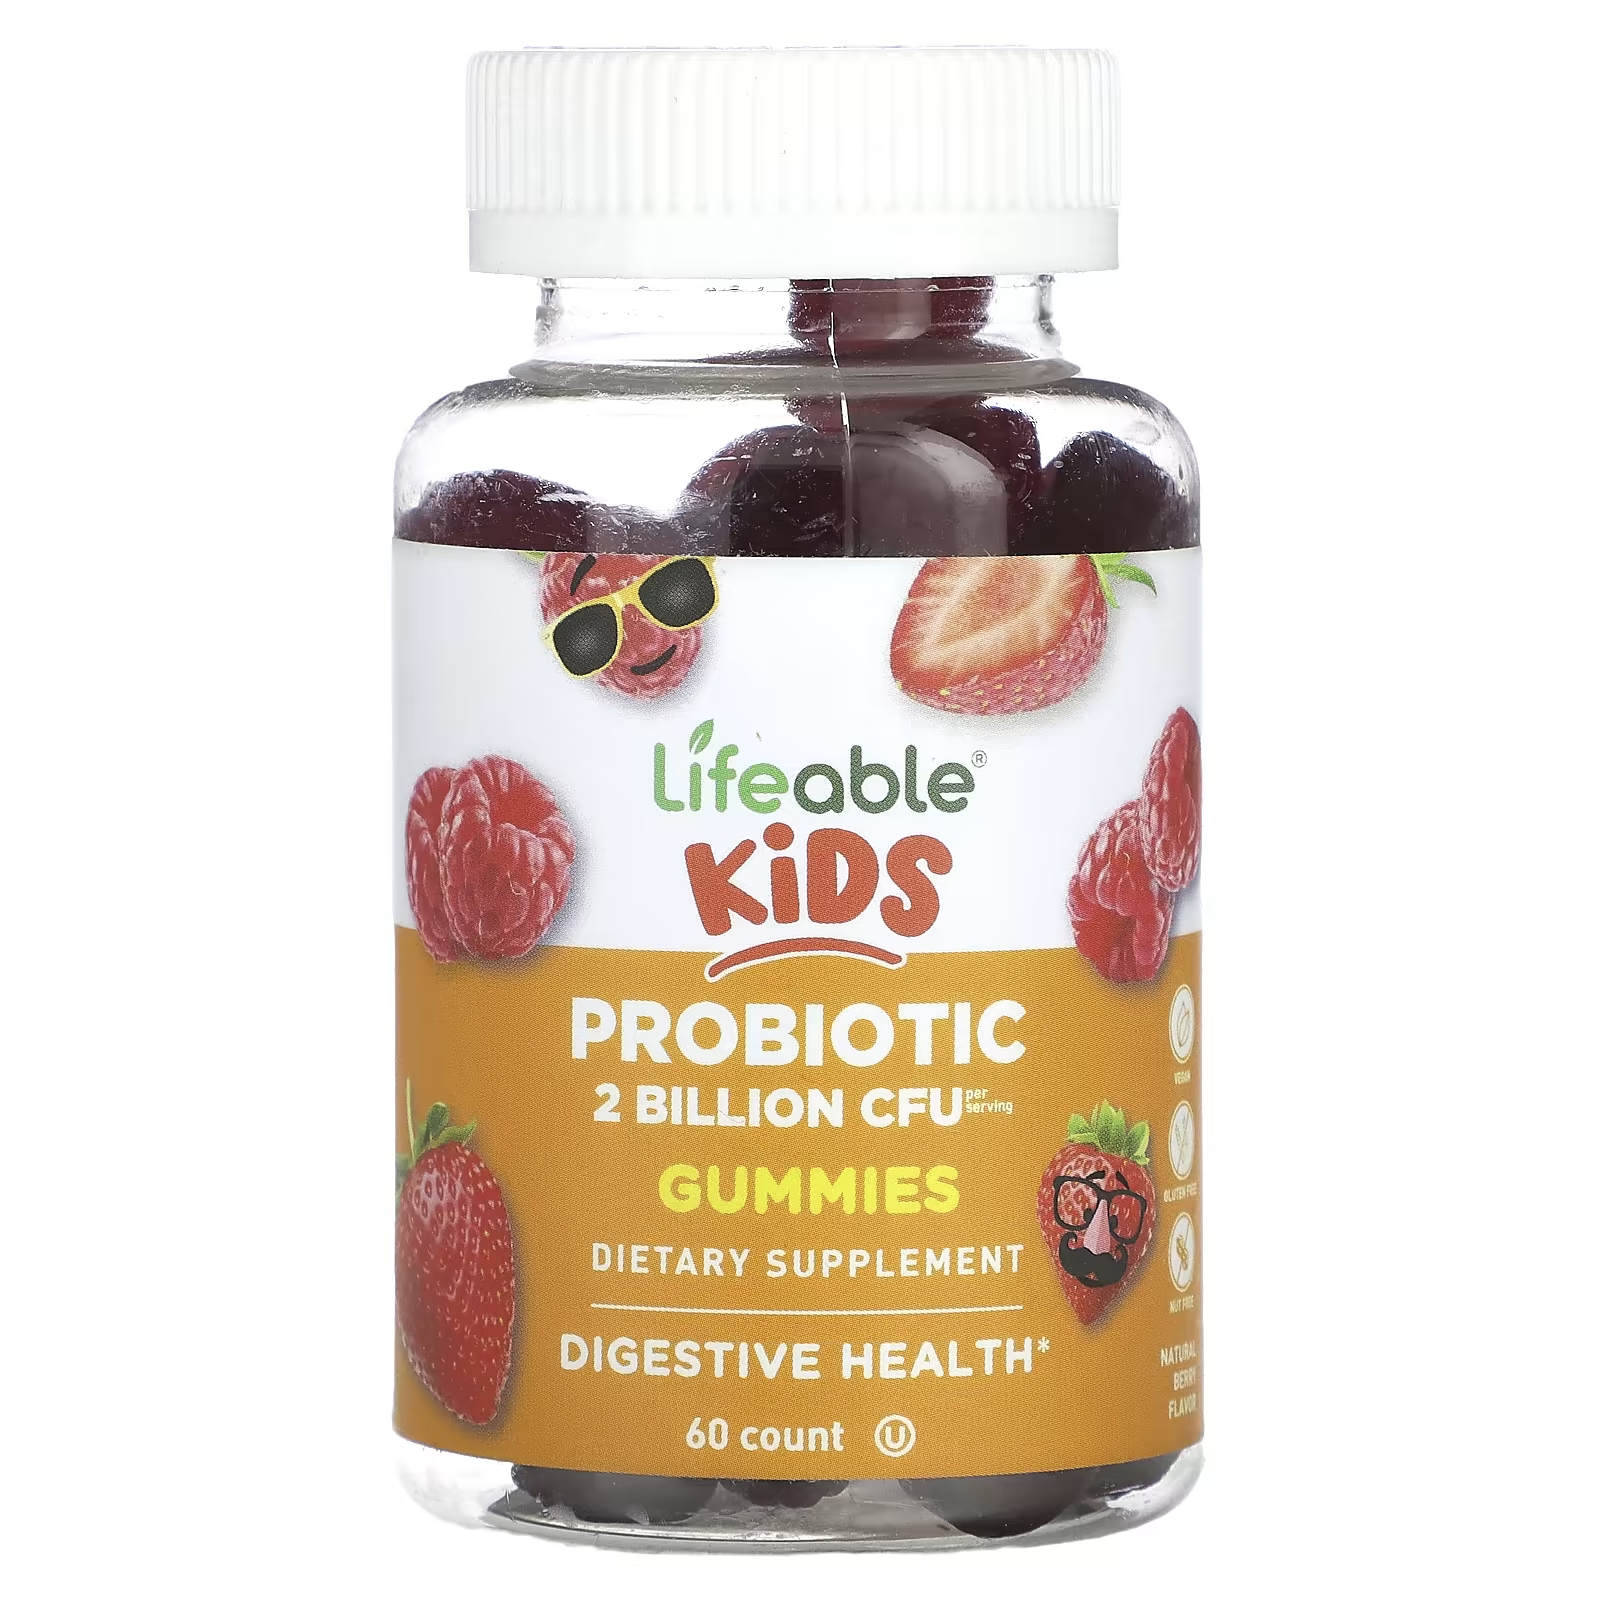 Пищевая добавка Lifeable Kids пробиотическая, 60 жевательных конфет пищевая добавка с биотином lifeable натуральная малина 60 жевательных конфет